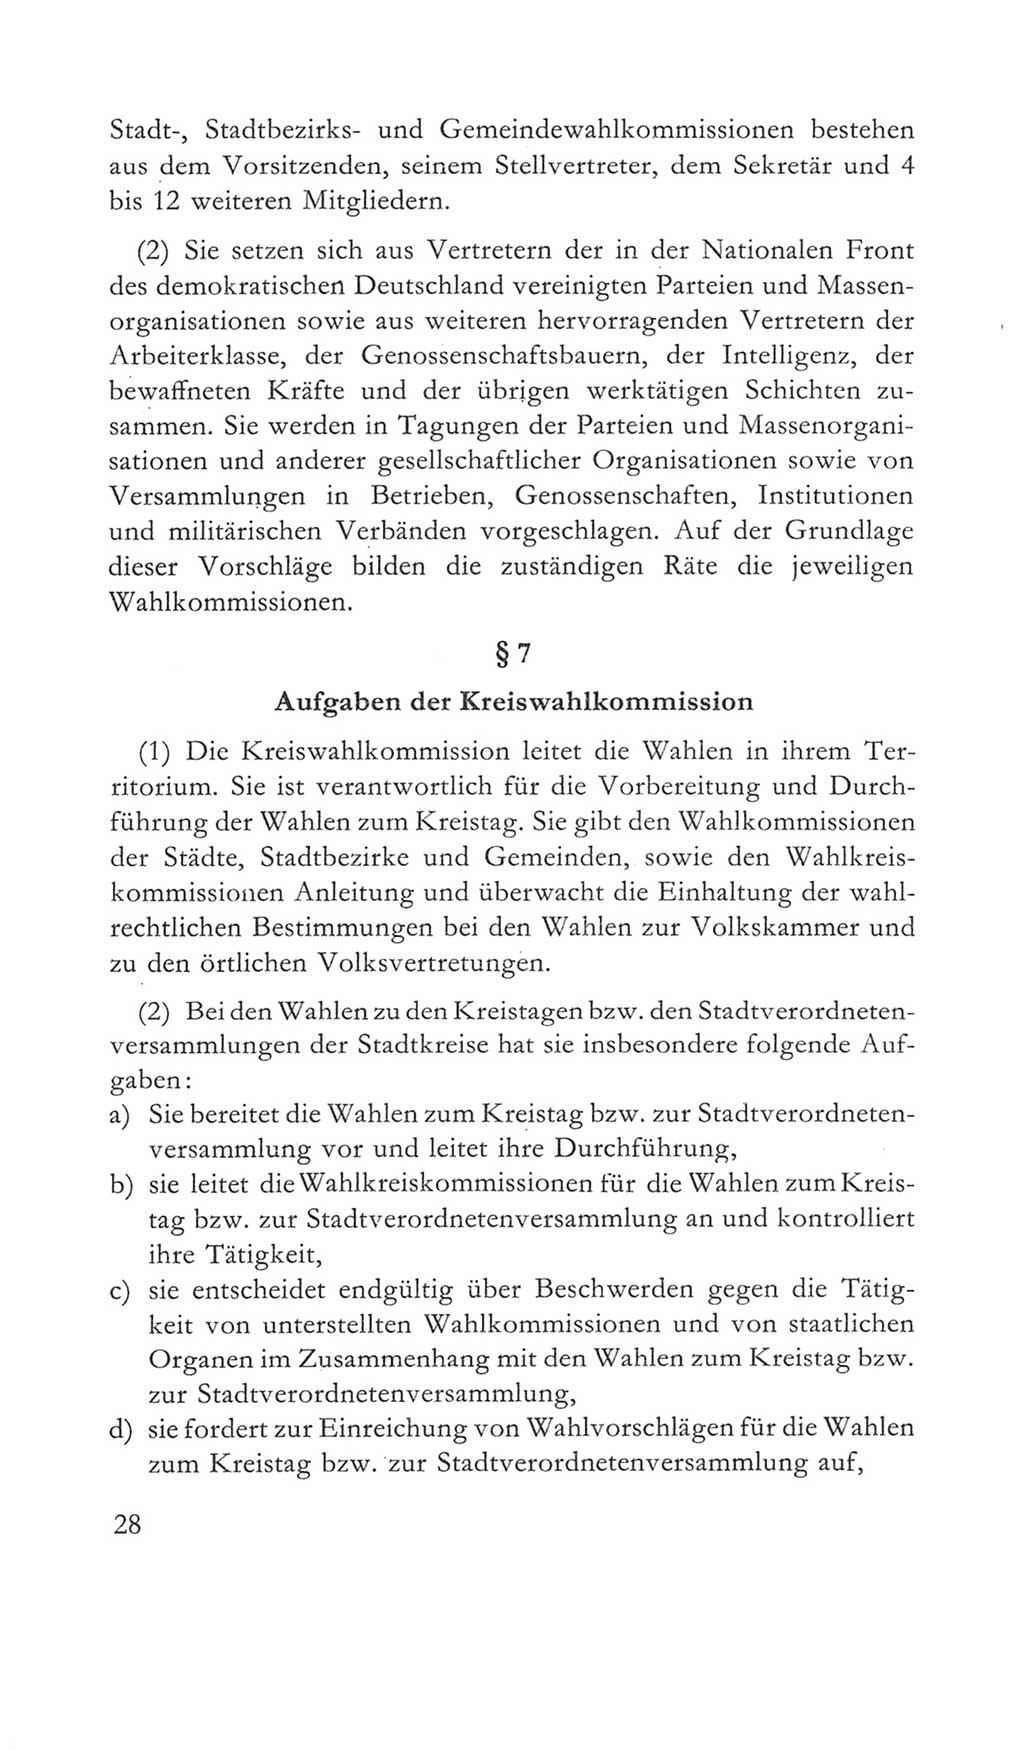 Volkskammer (VK) der Deutschen Demokratischen Republik (DDR) 5. Wahlperiode 1967-1971, Seite 28 (VK. DDR 5. WP. 1967-1971, S. 28)